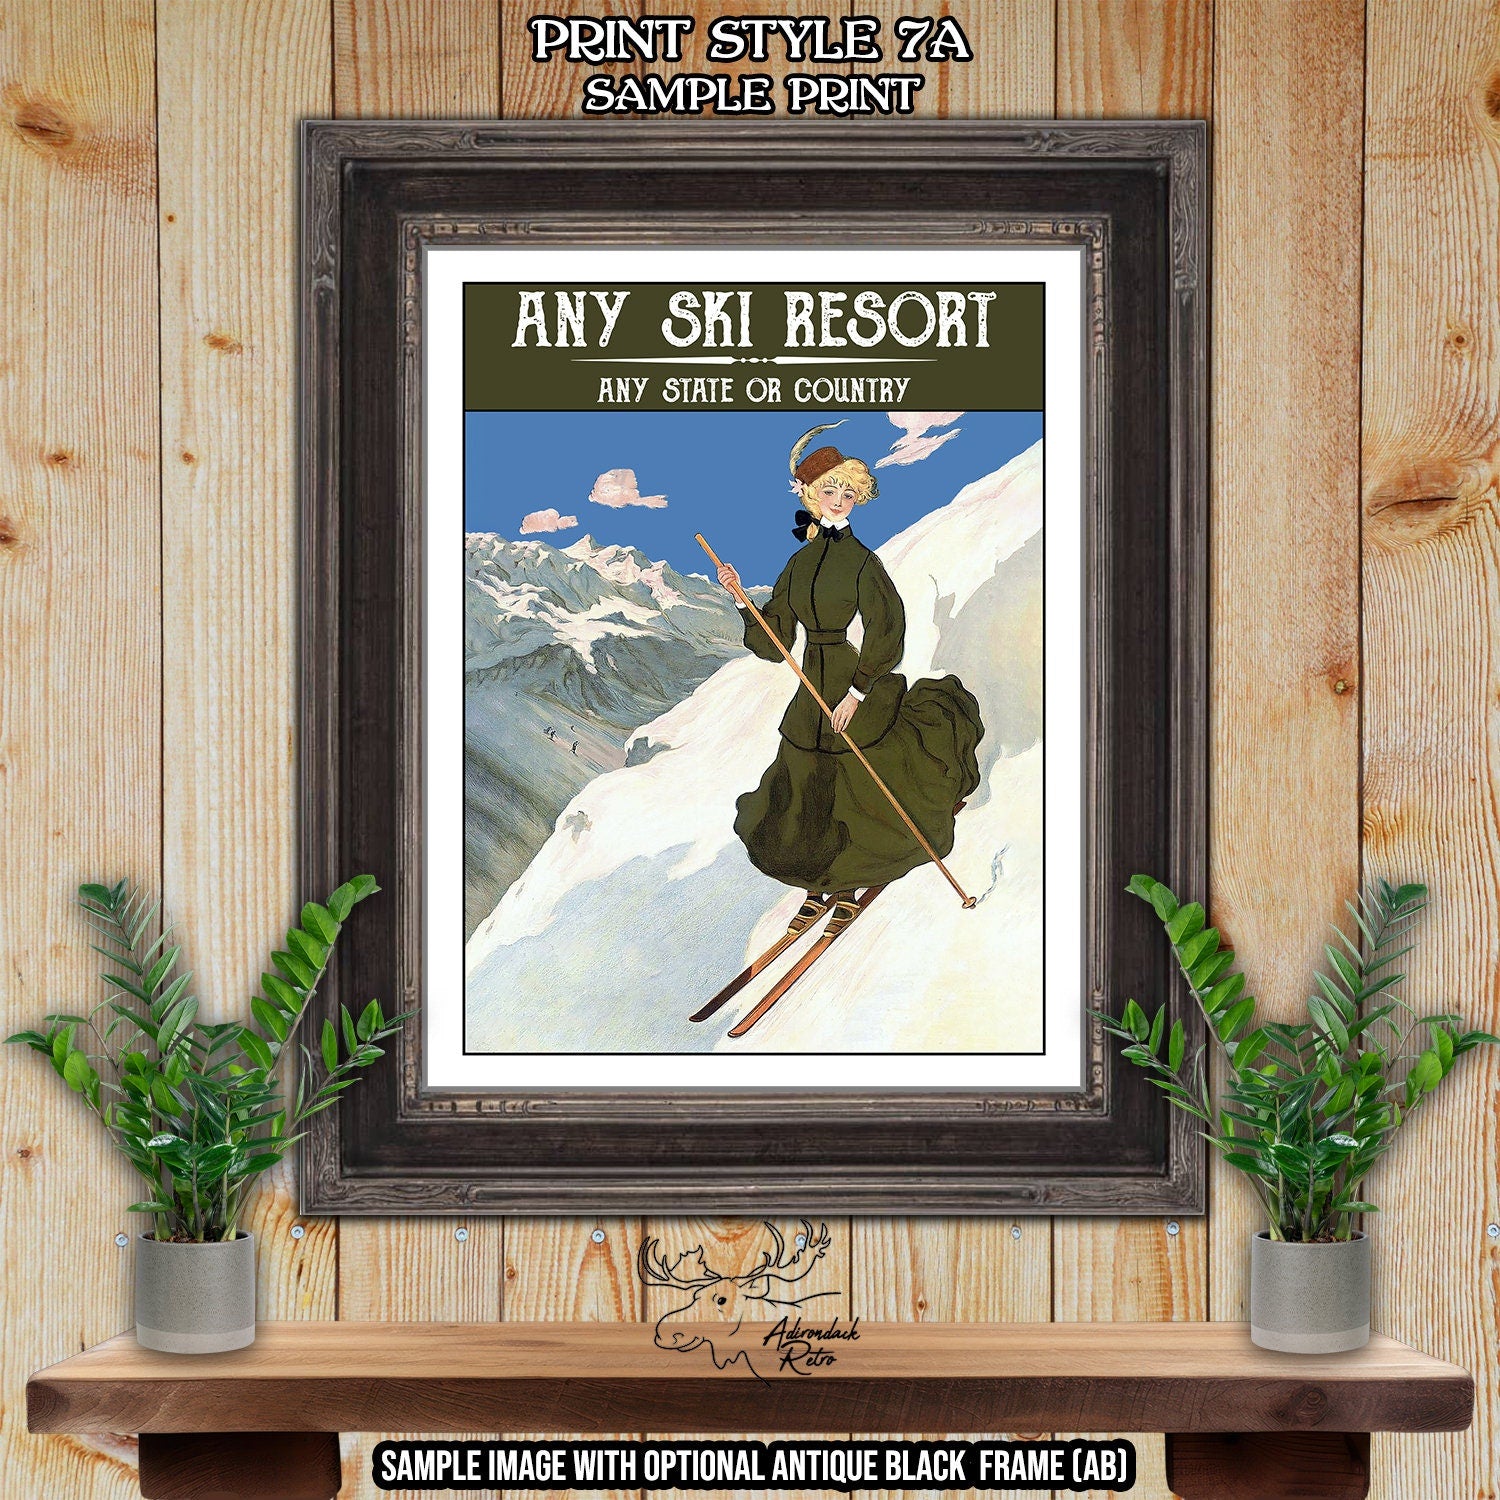 Pico Mountain Vermont Retro Ski Resort Print